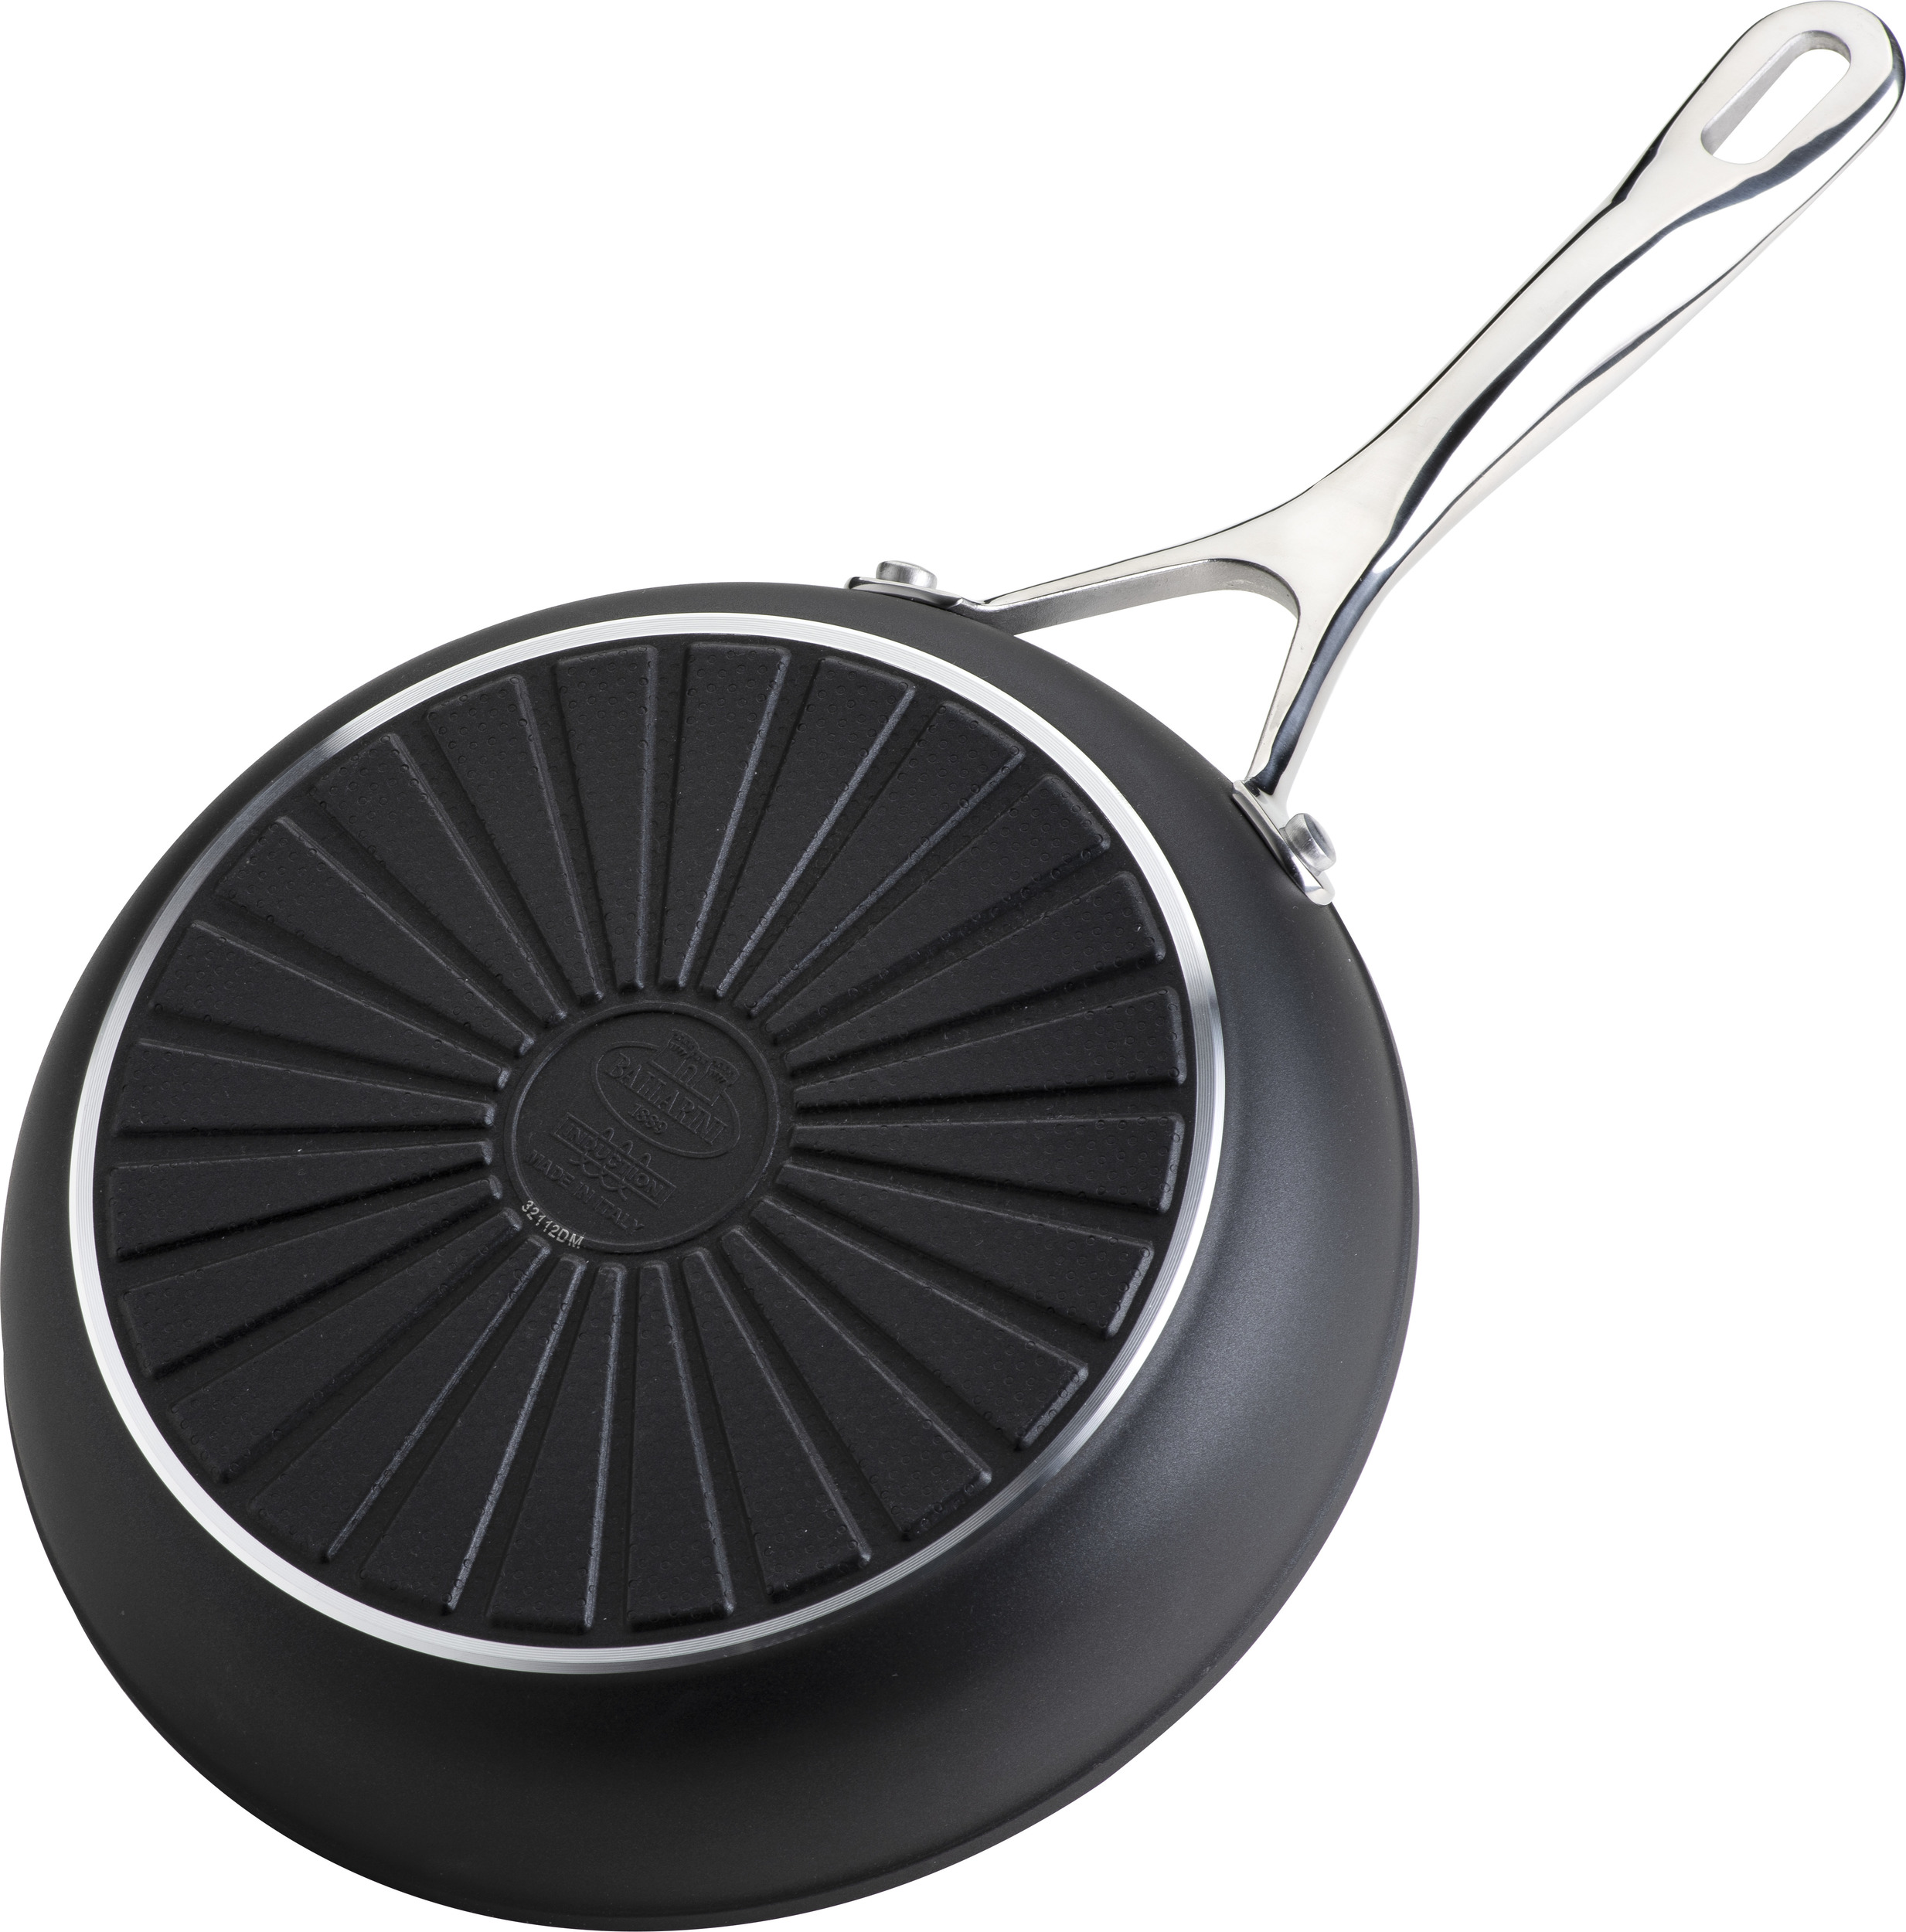 Frying pan, aluminum, 20 cm, ALBA - Ballarini